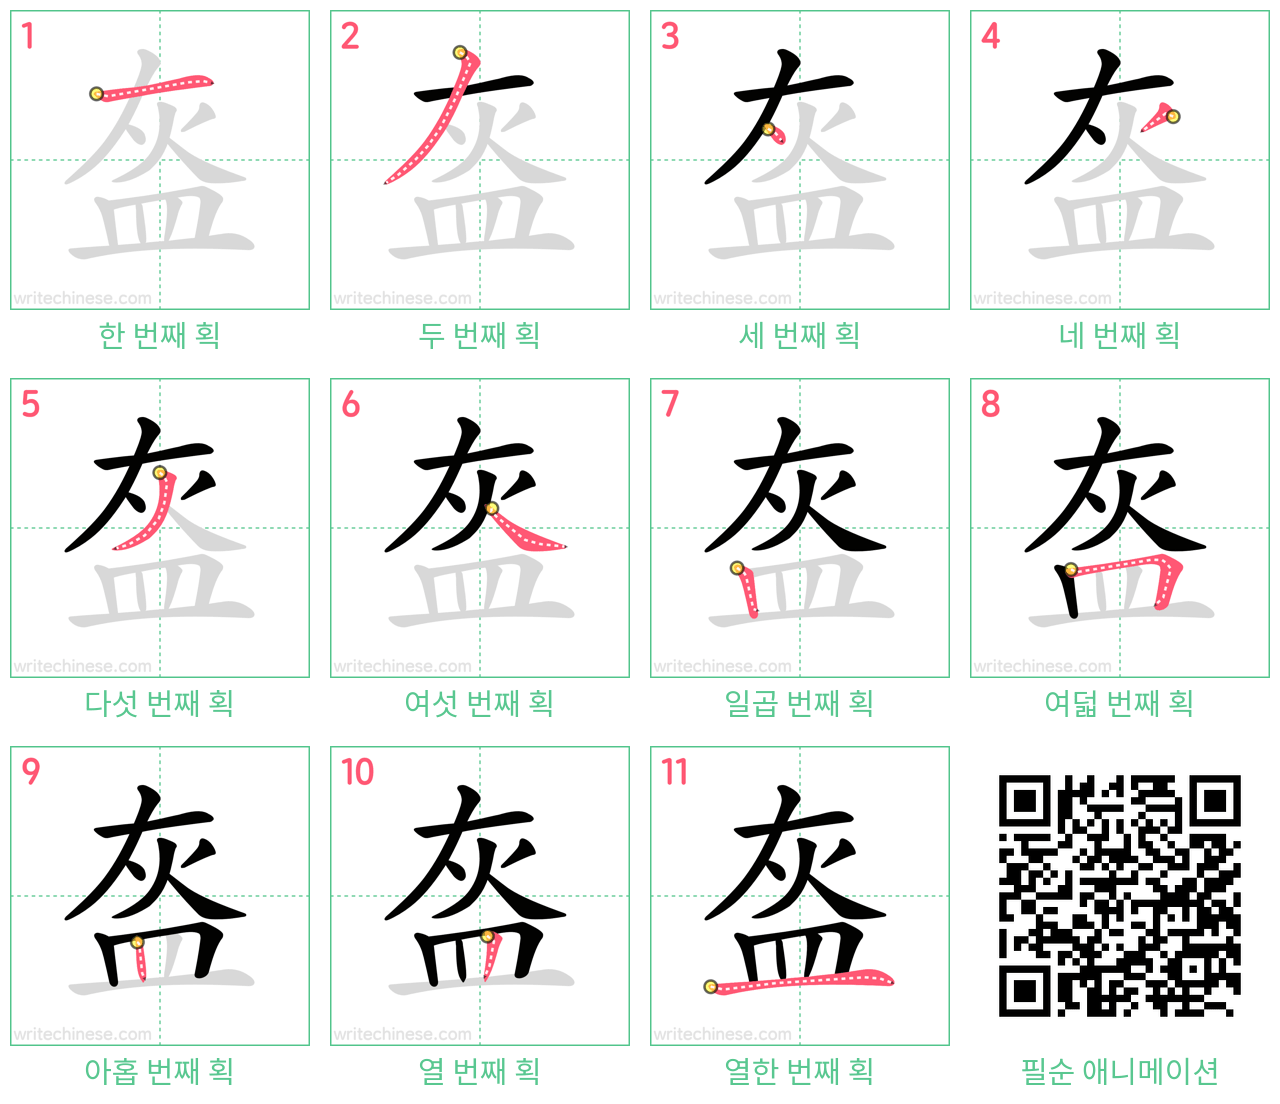 盔 step-by-step stroke order diagrams